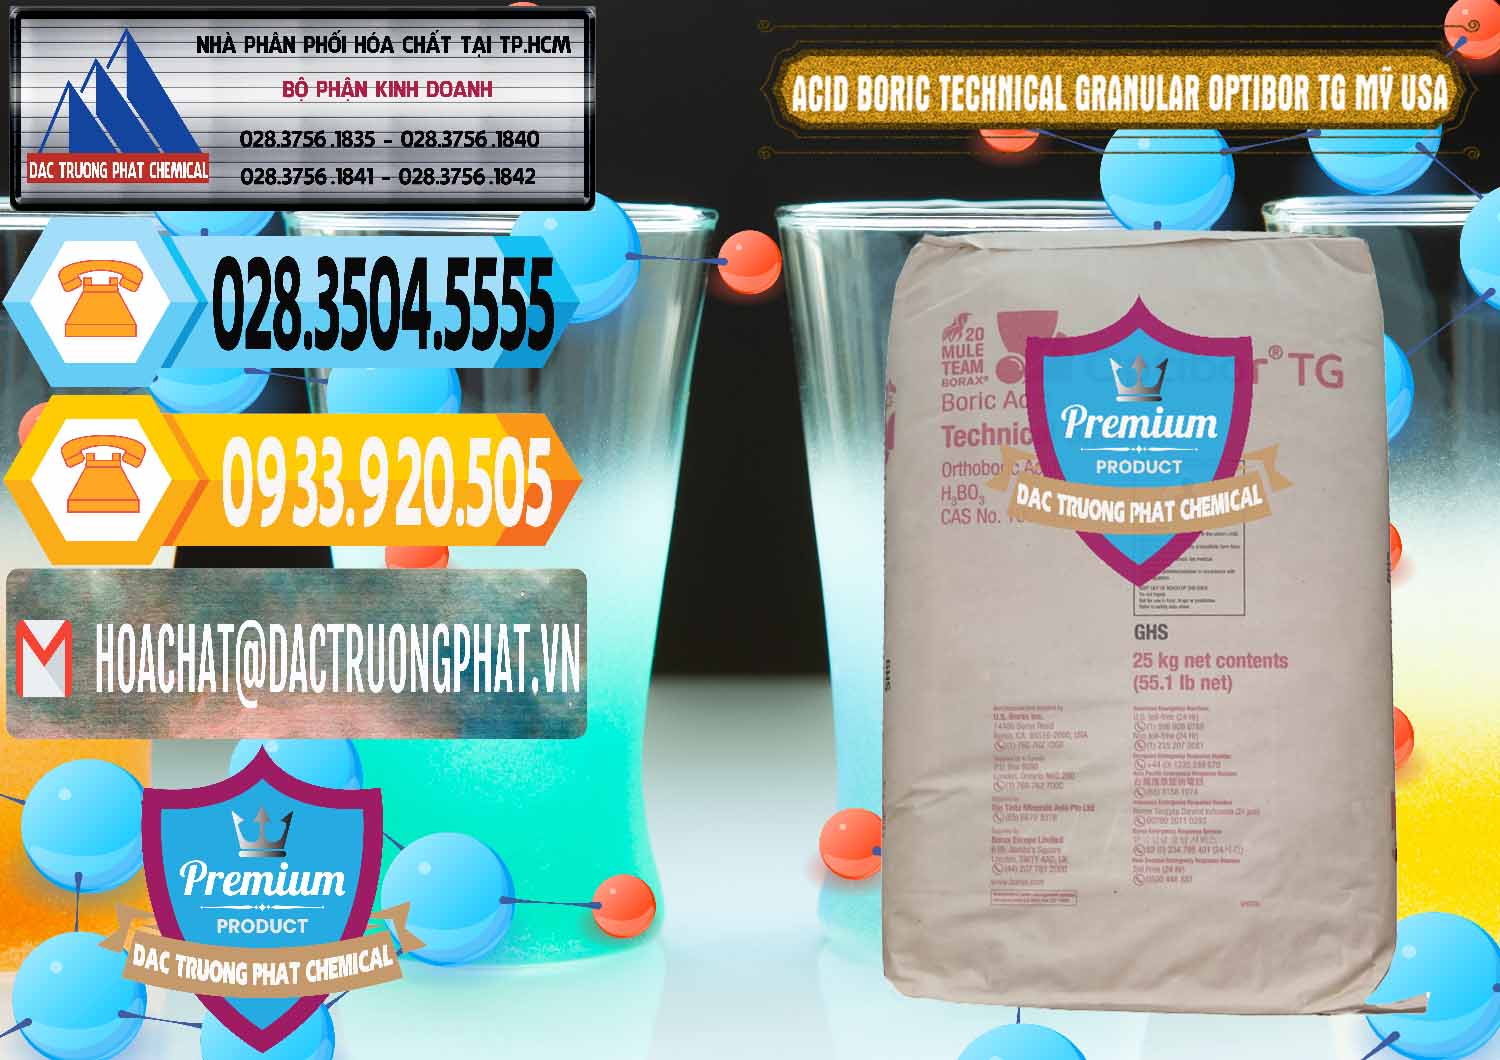 Cty bán - cung cấp Acid Boric – Axit Boric H3BO3 99% New 2021 Mỹ USA OPTIBOR® TG - 0226 - Nhà cung cấp _ phân phối hóa chất tại TP.HCM - hoachattayrua.net